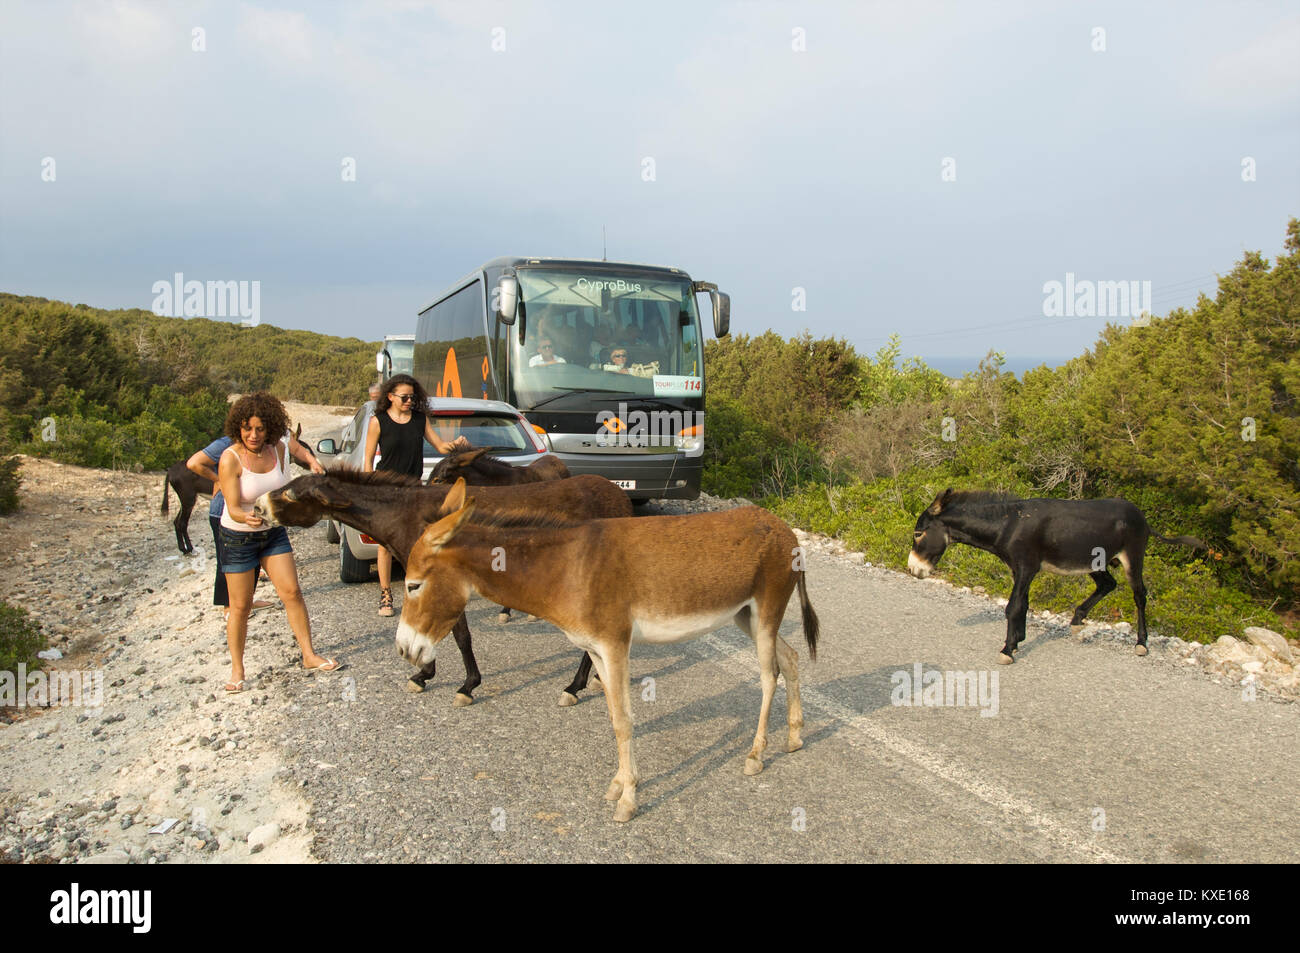 Paradas de tráfico para los burros bloqueando la carretera que están siendo alimentados por los turistas, en el norte de Chipre Foto de stock